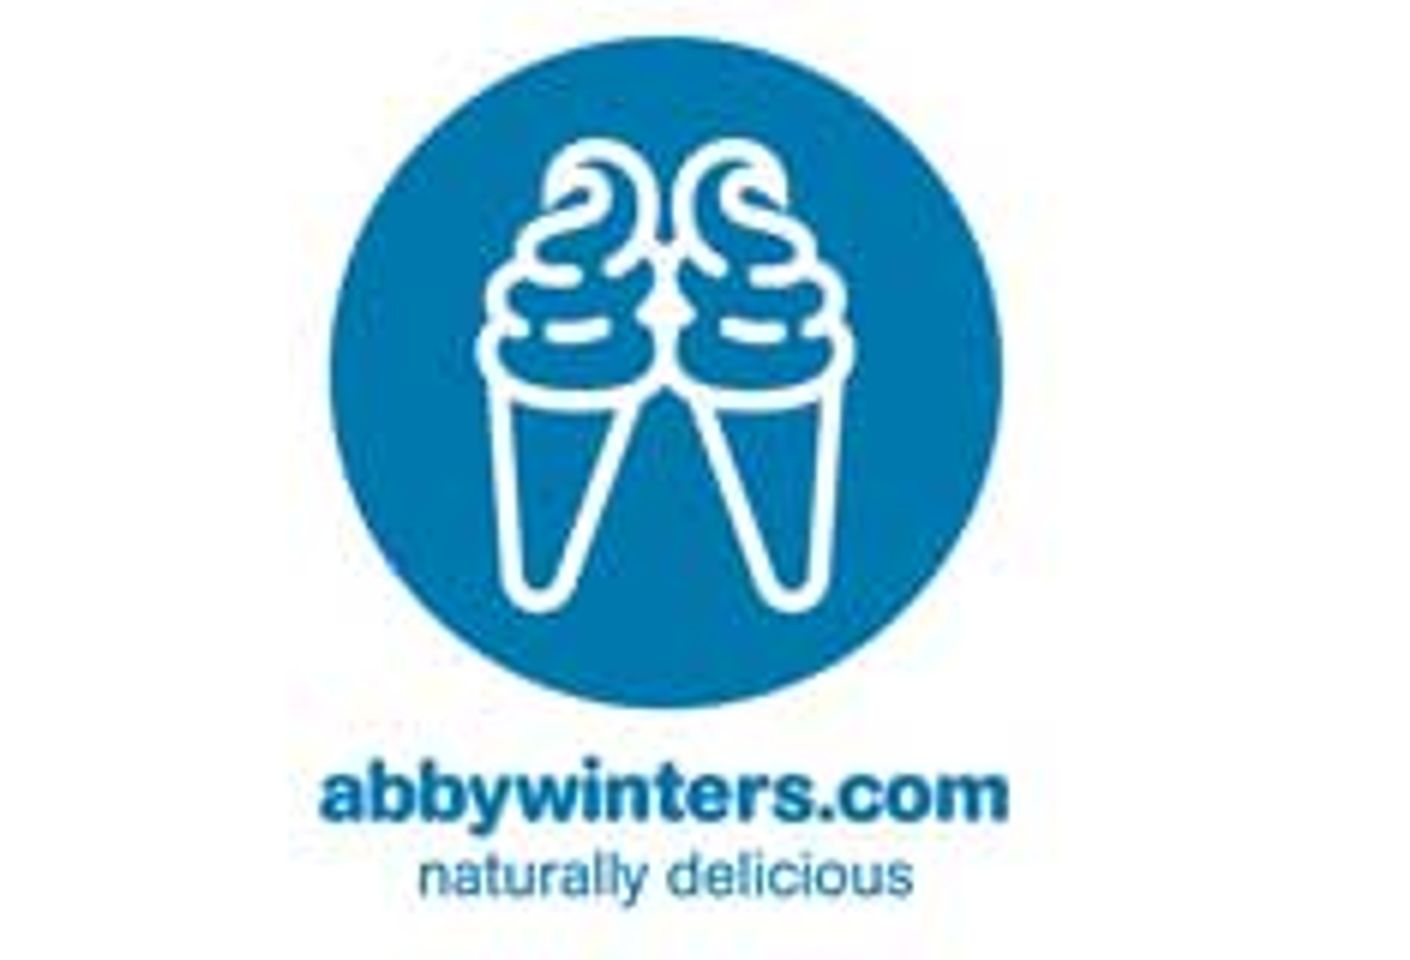 abbywinters.com Gets Raunchy